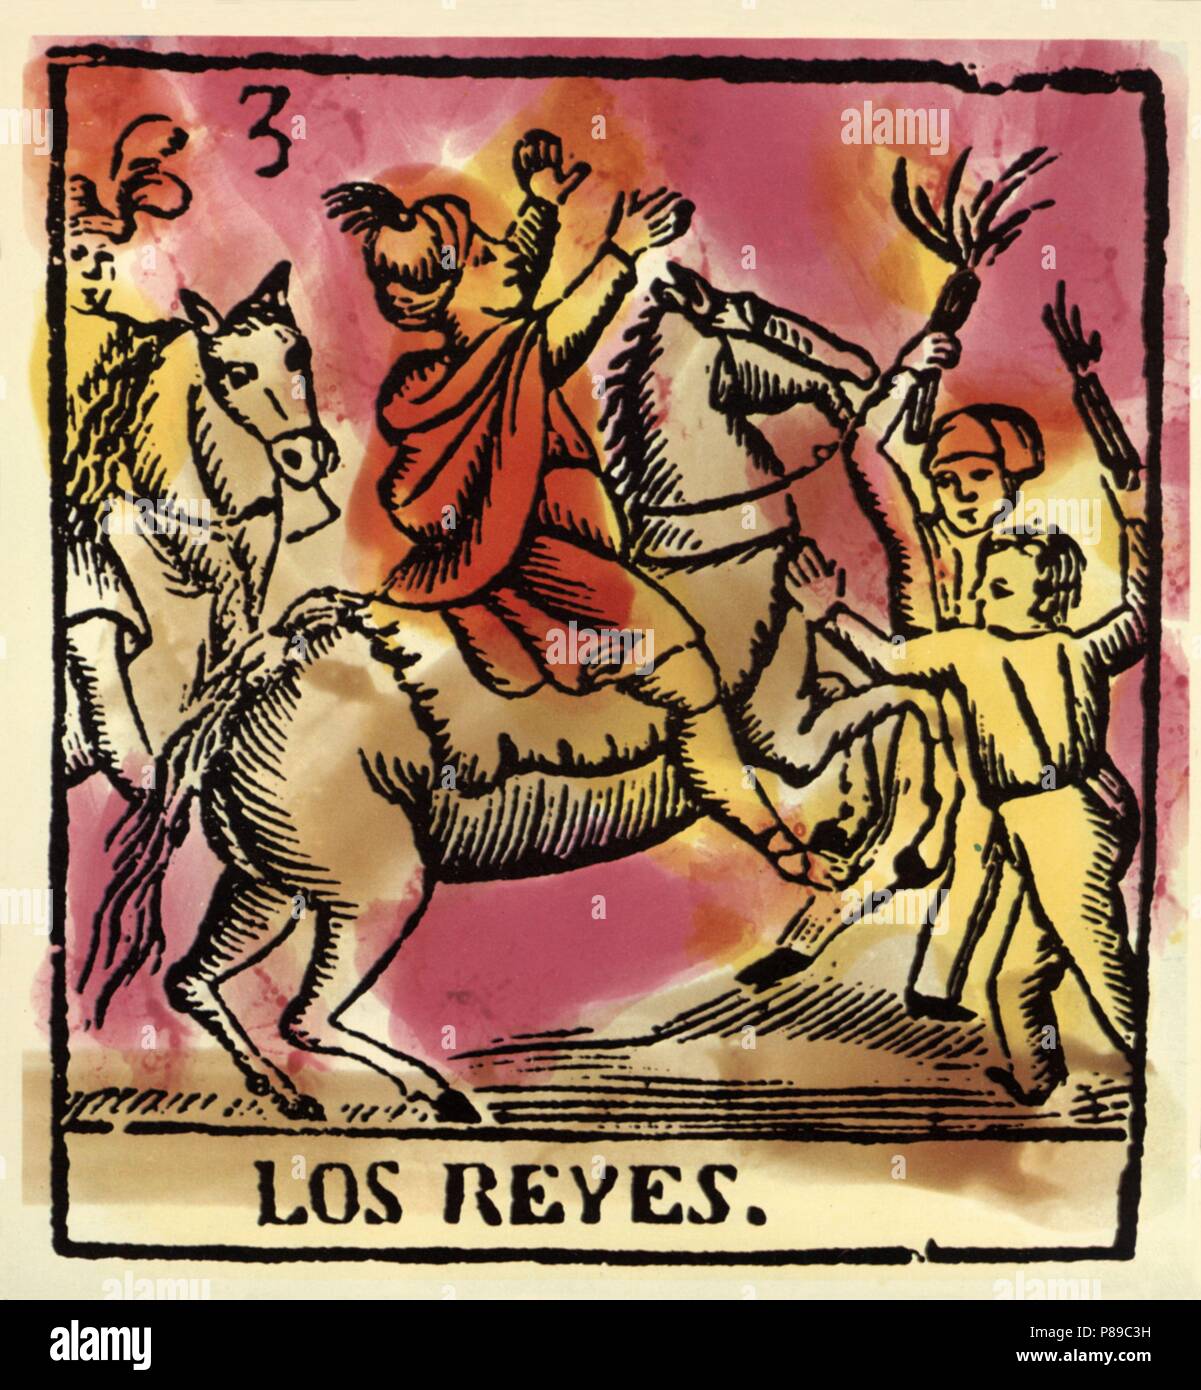 Catalunya. Fiestas y tradiciones populares. Festividad de los Reyes Magos. Grabado coloreado del siglo XIX. Stock Photo